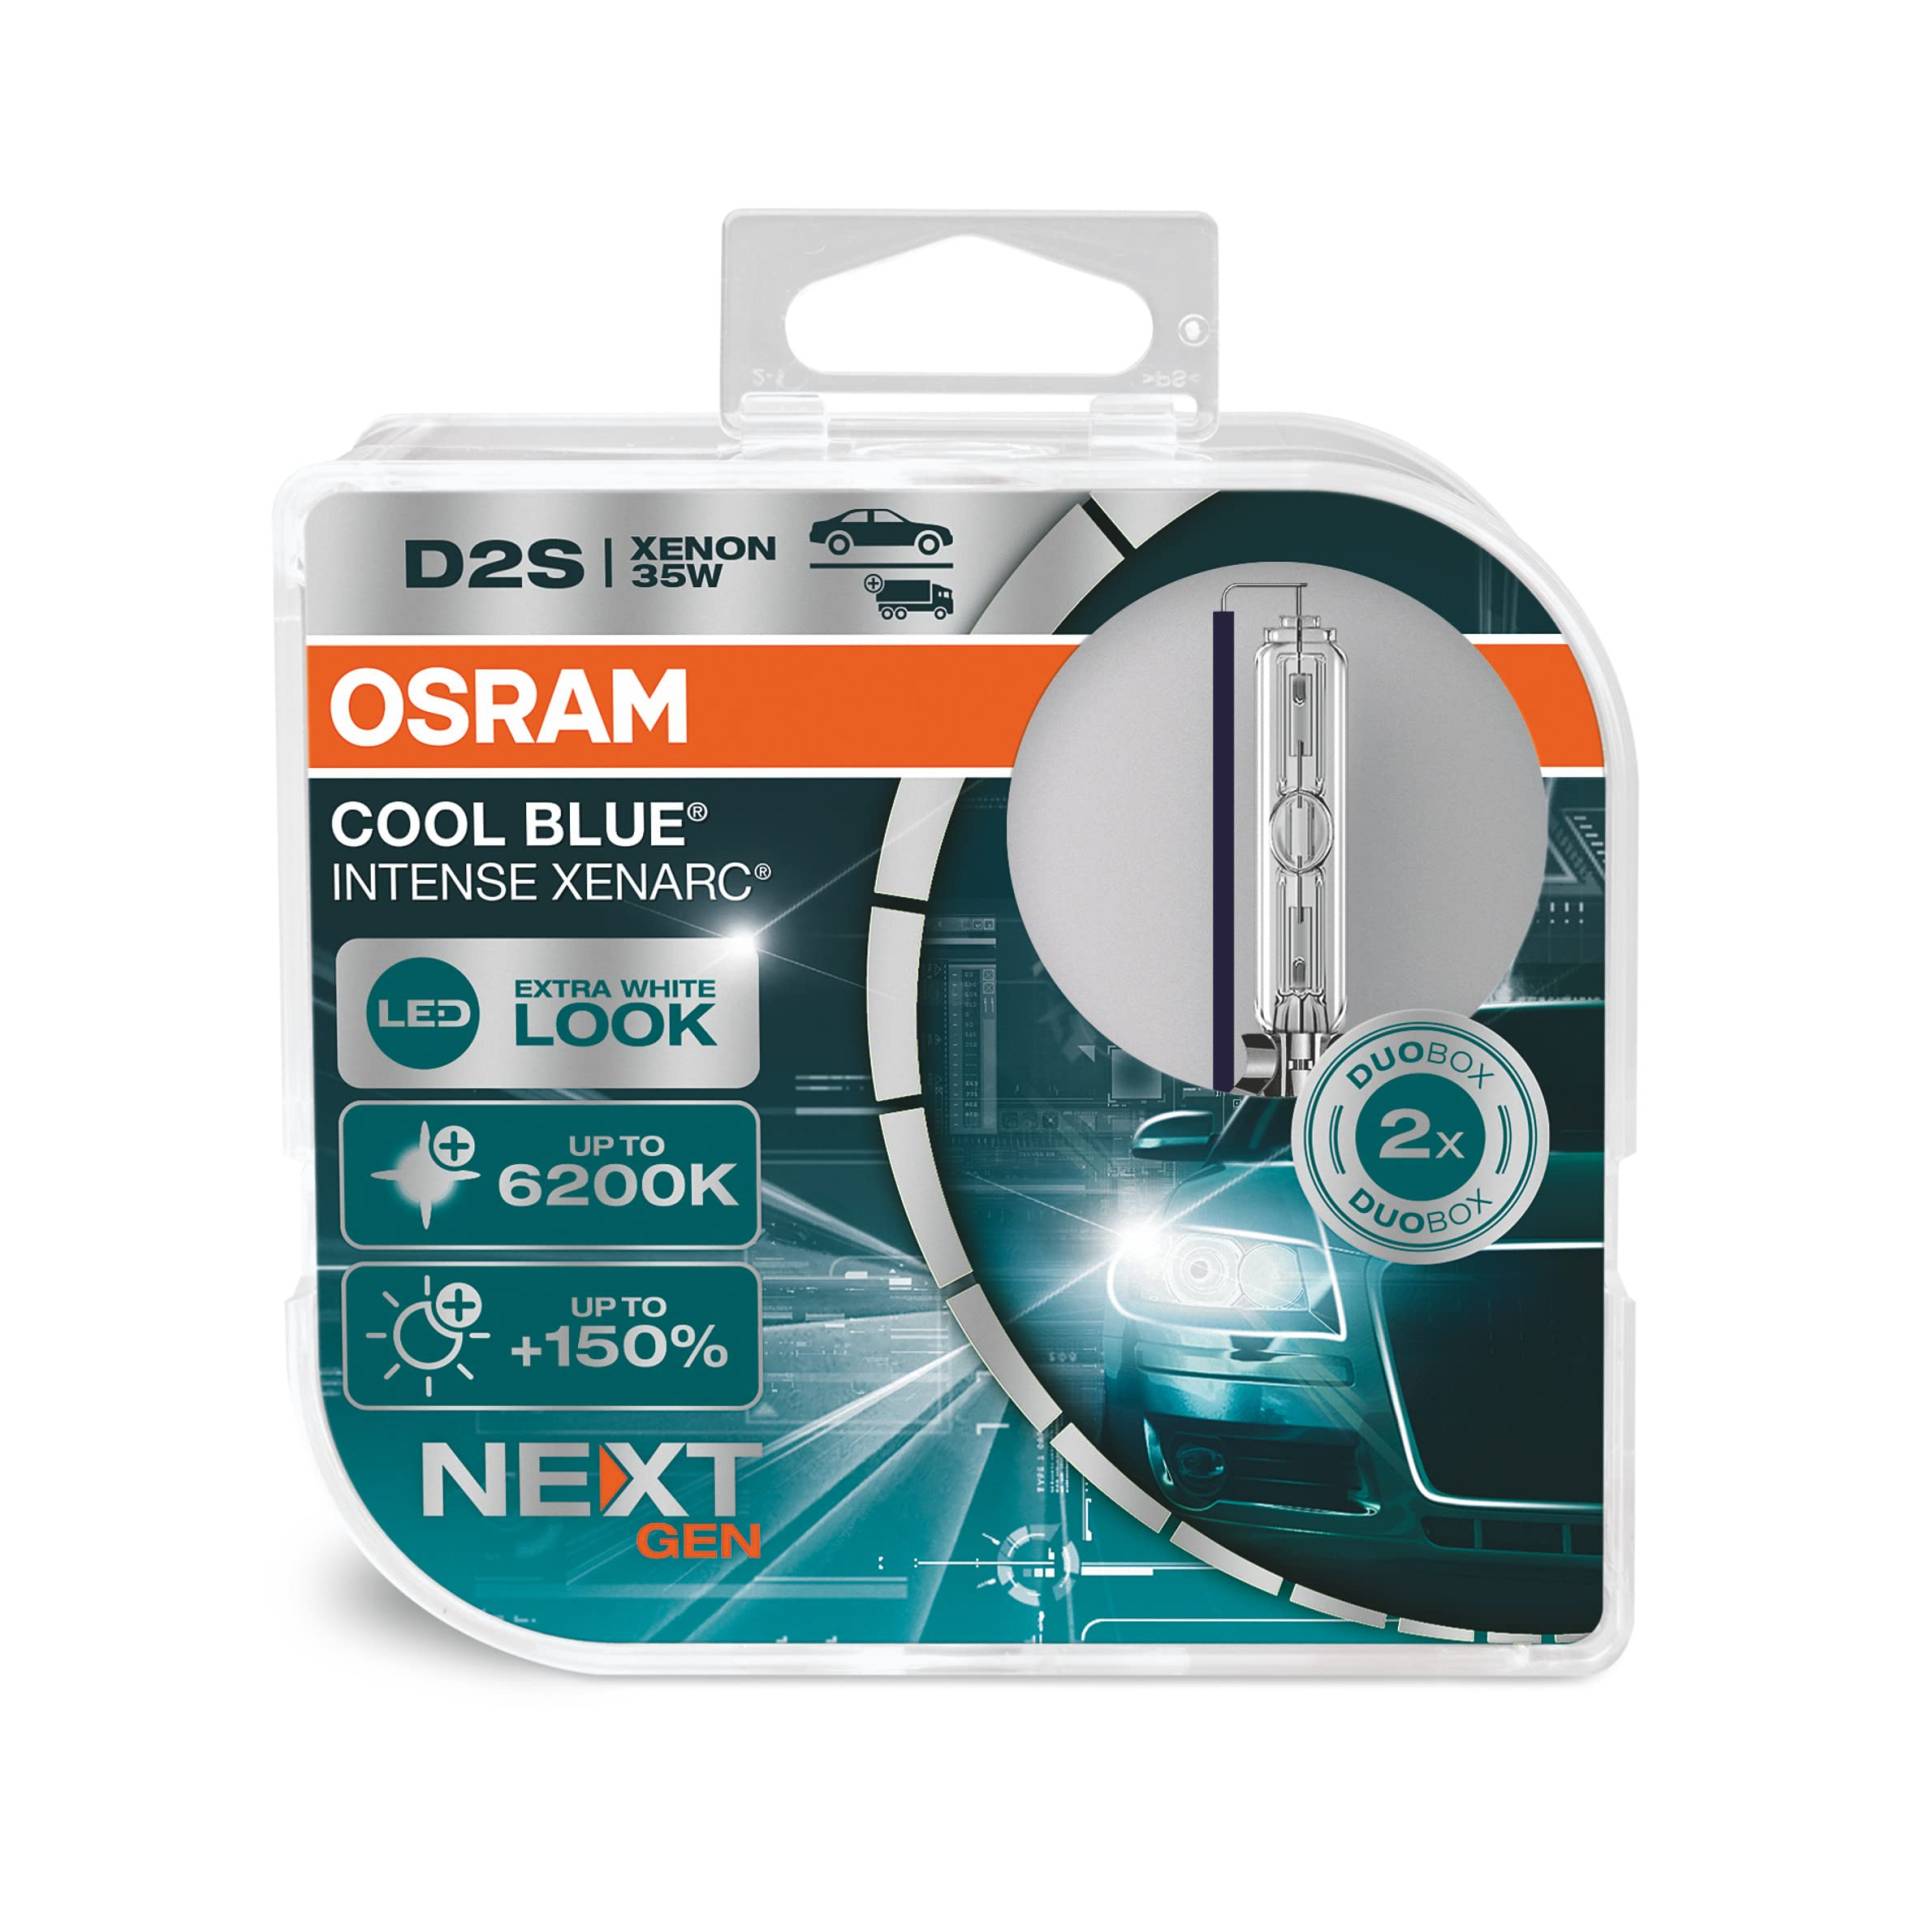 OSRAM Xenarc Cool Blue Intense D2S, 150 Prozent Mehr Helligkeit, Bis Zu 6.200 K, Xenon-Scheinwerferlampe, Led Look, White - Duo Box (2 Lampen) von Osram